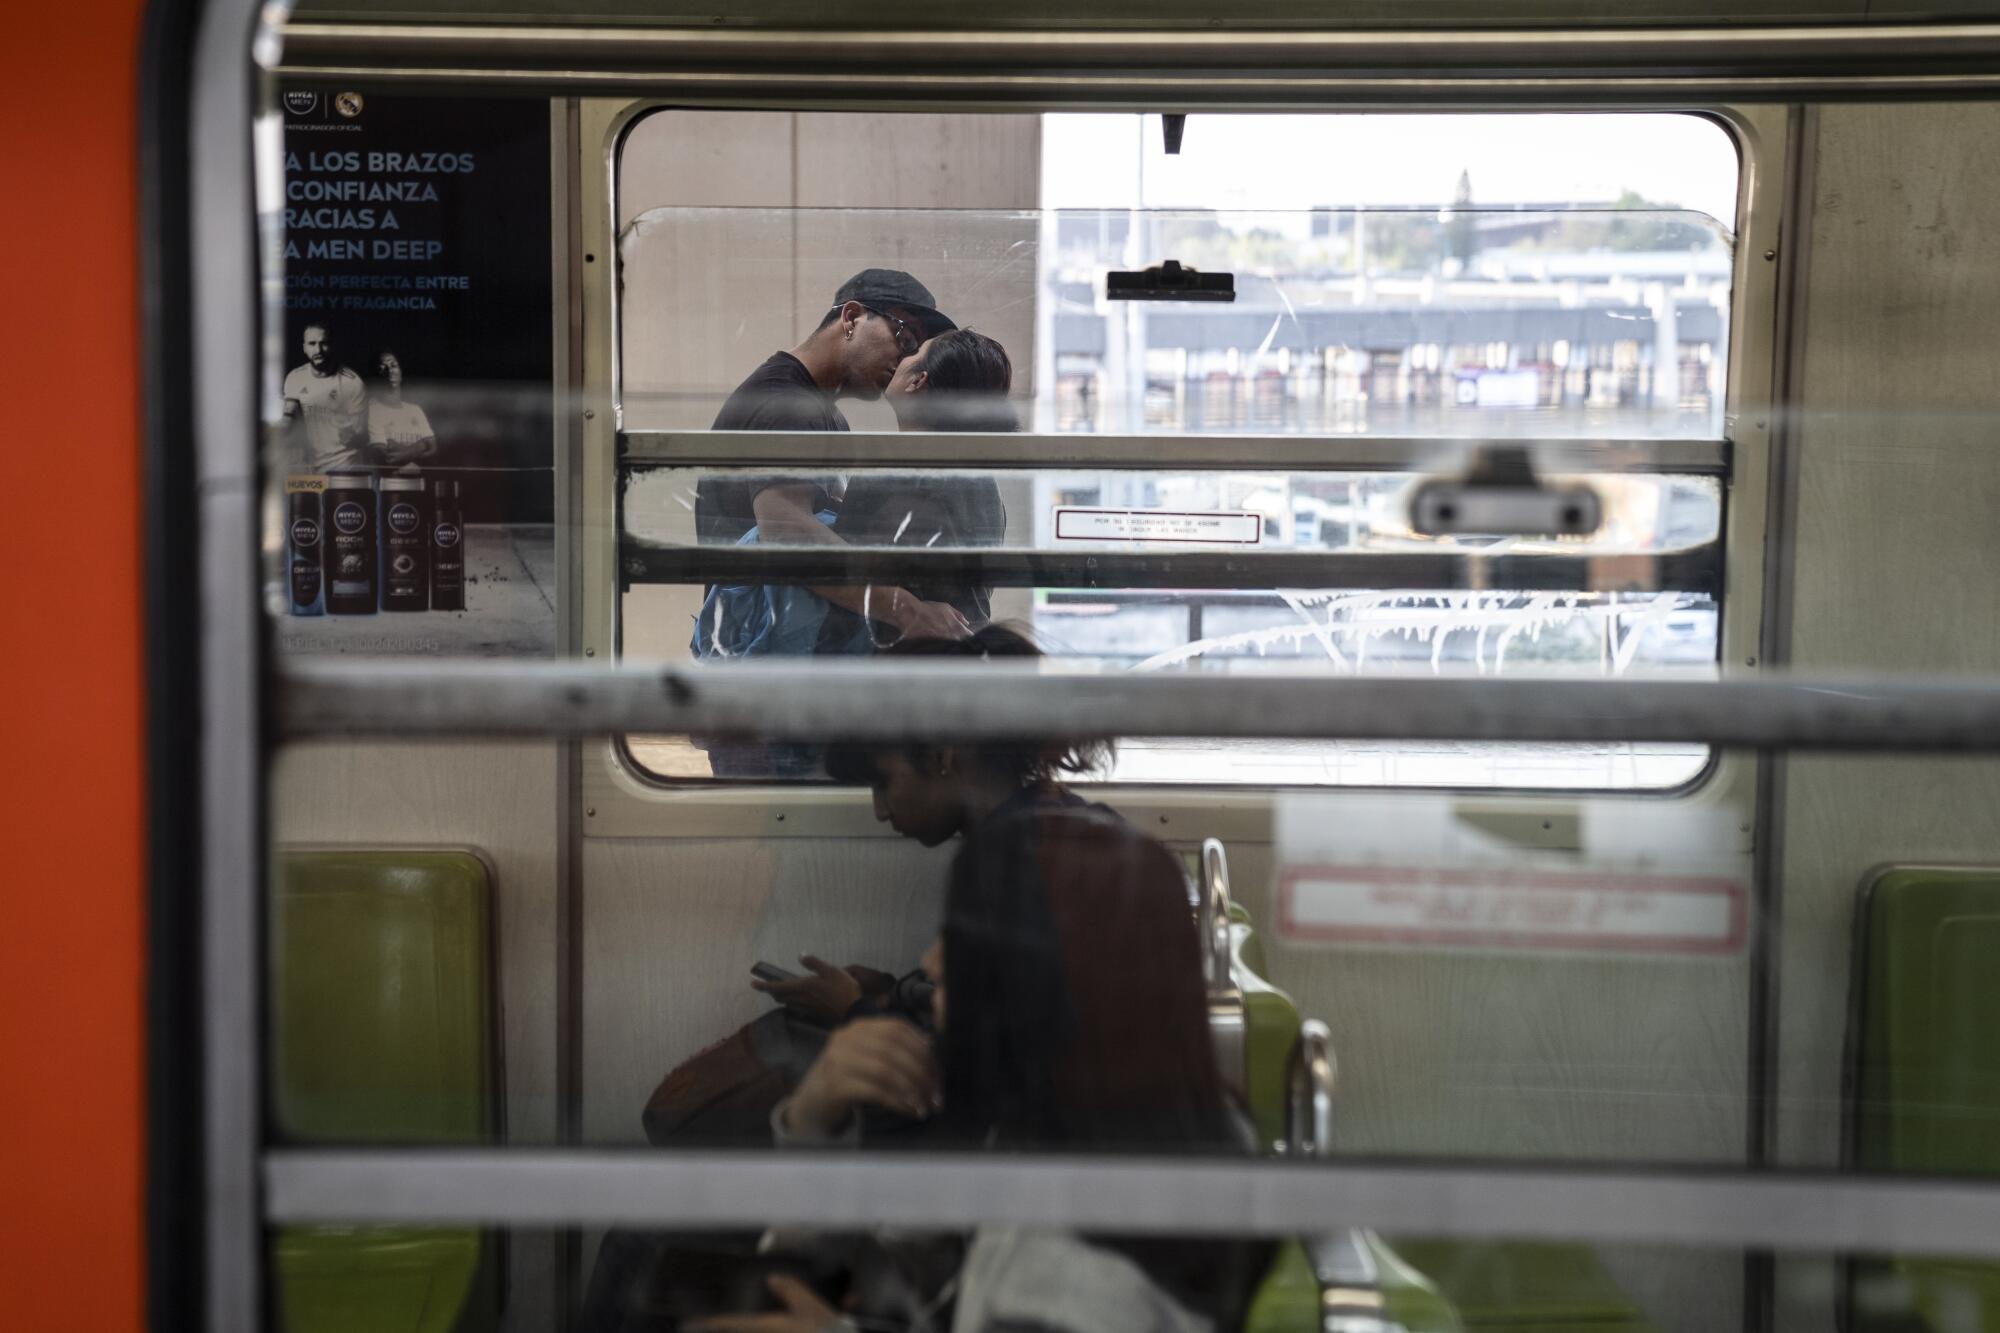 A couple kiss as seen through the windows of a subway car.